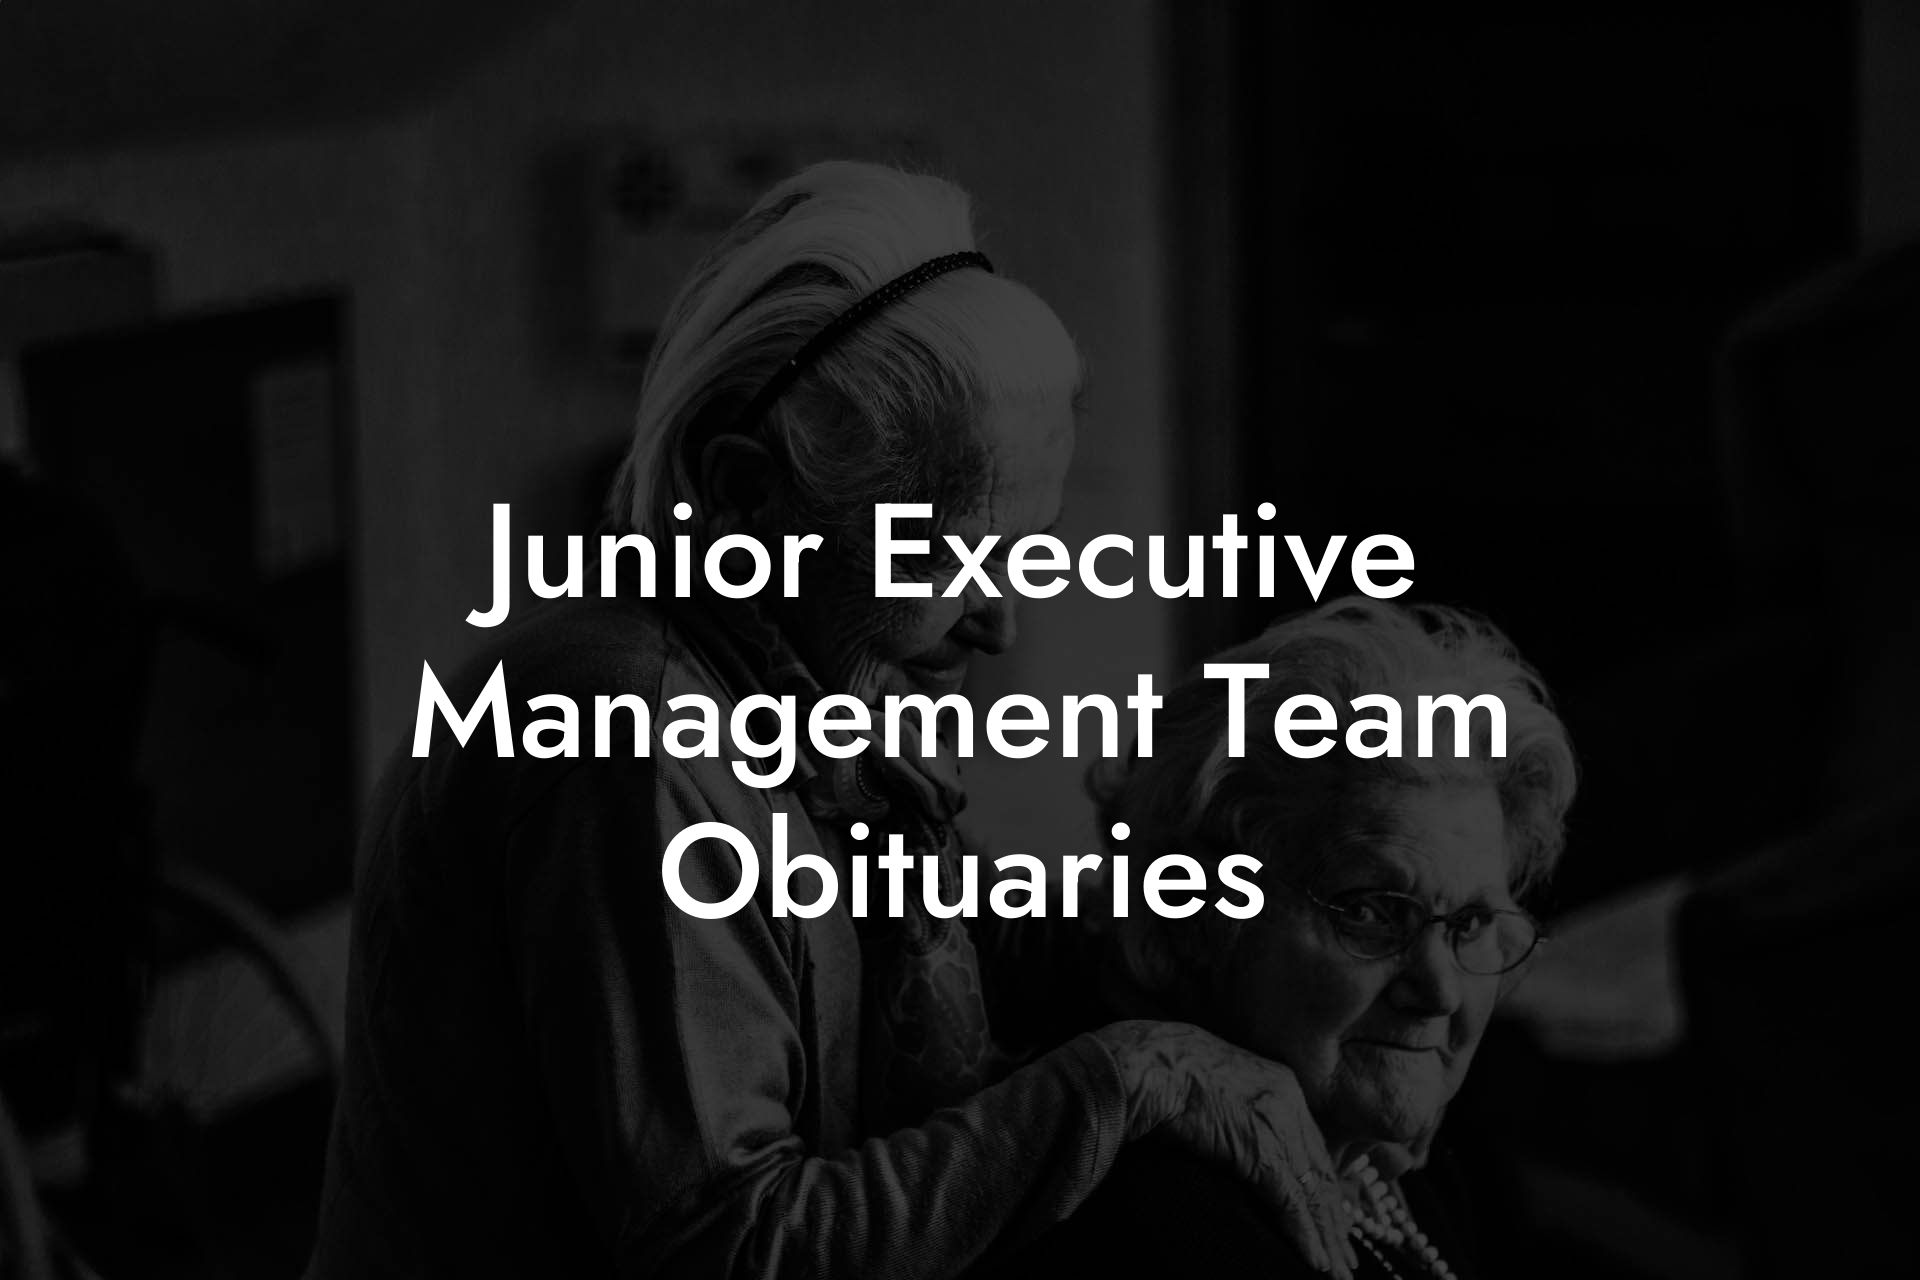 Junior Executive Management Team Obituaries